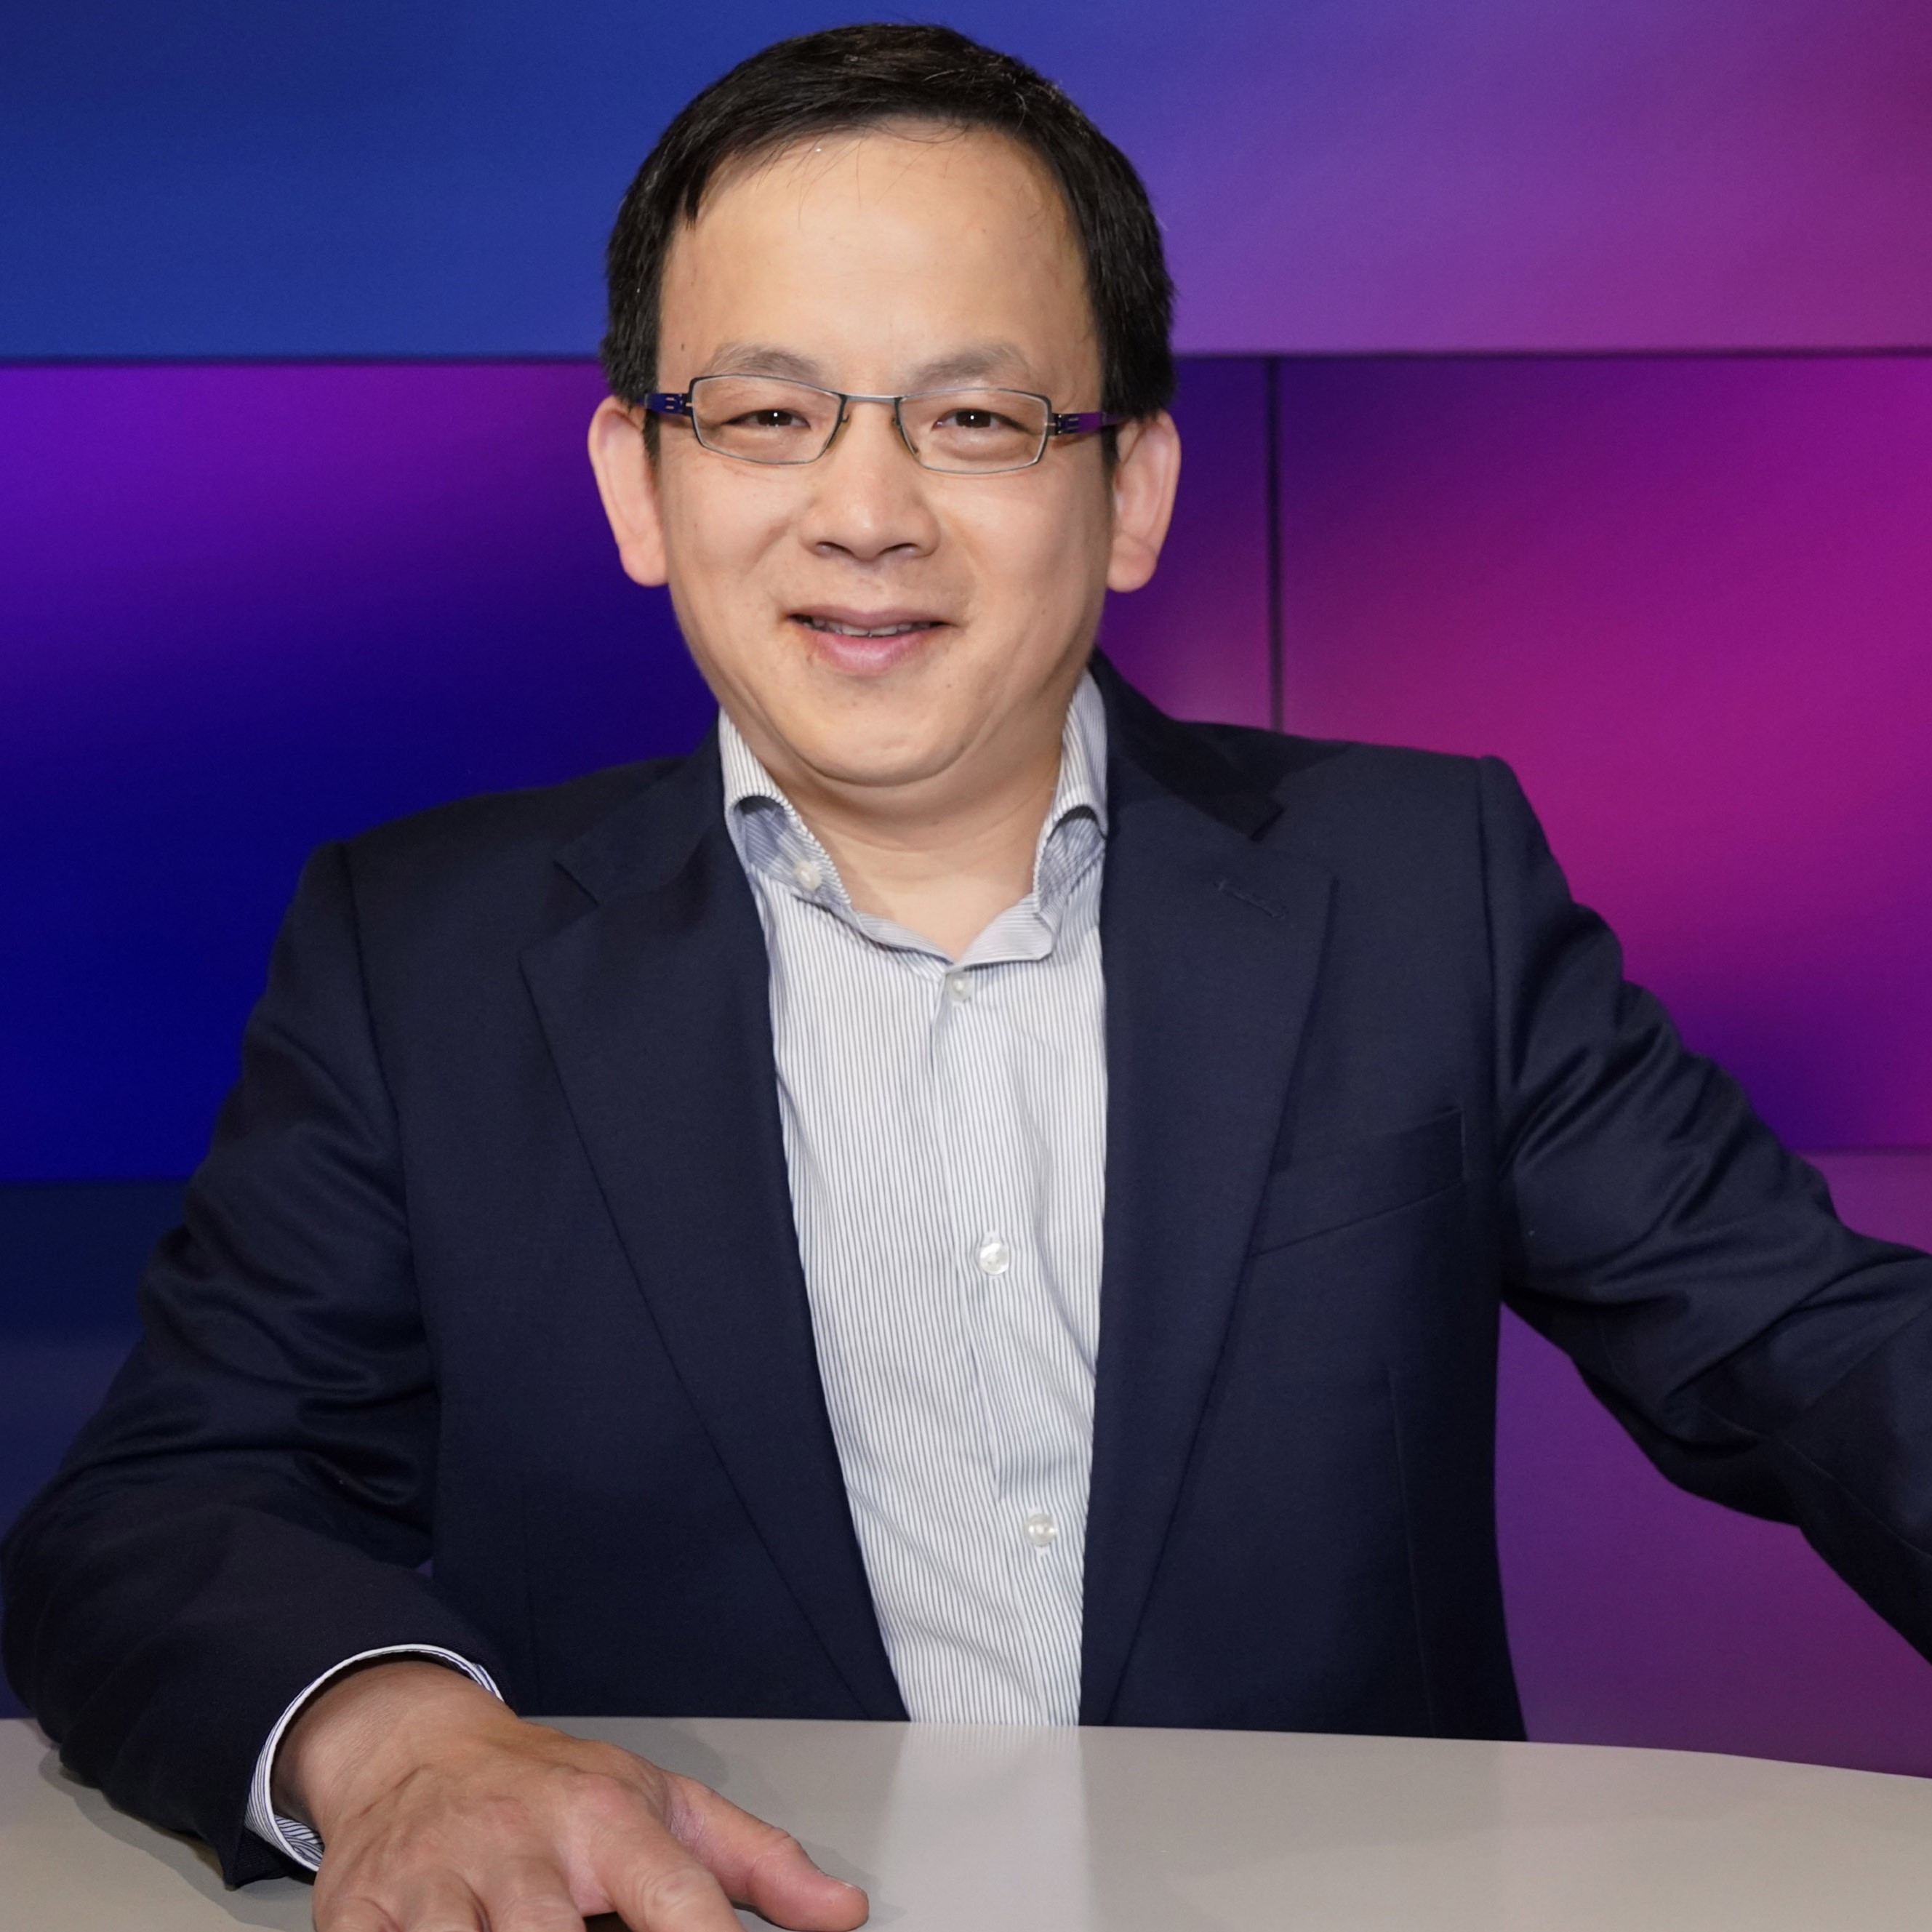 ”Es war völlig klar, dass ich überwacht wurde” | Chinaexperte Felix Lee zu gast im hr1-Talk